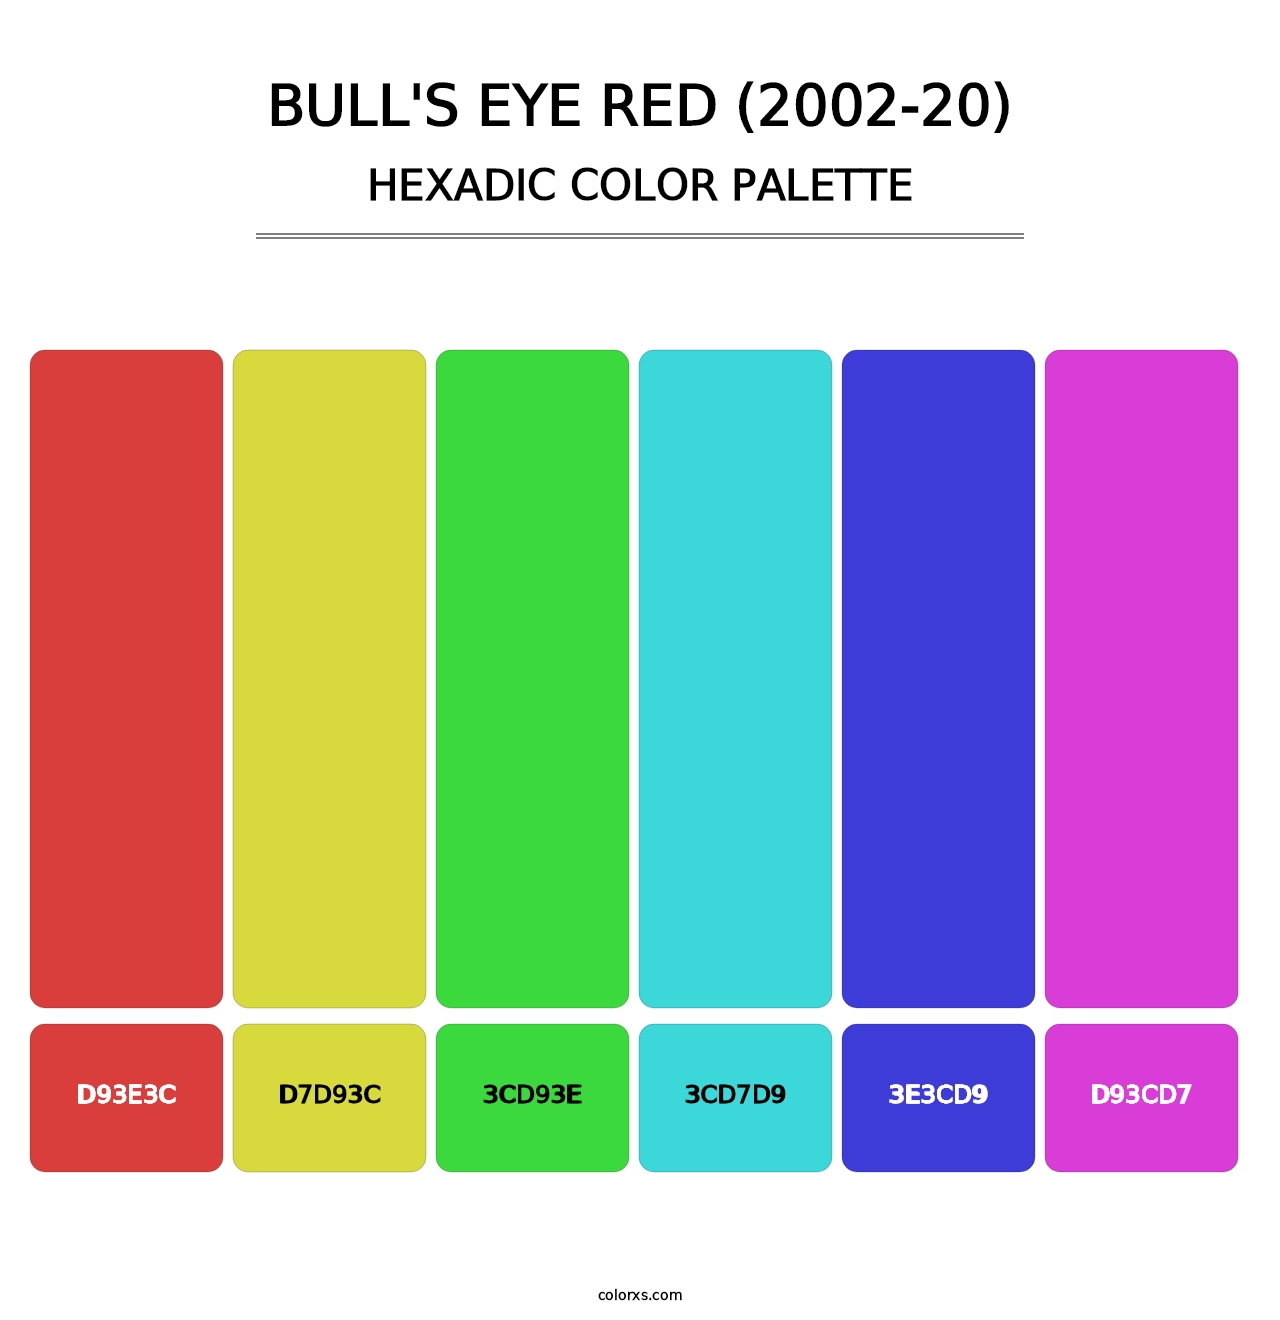 Bull's Eye Red (2002-20) - Hexadic Color Palette